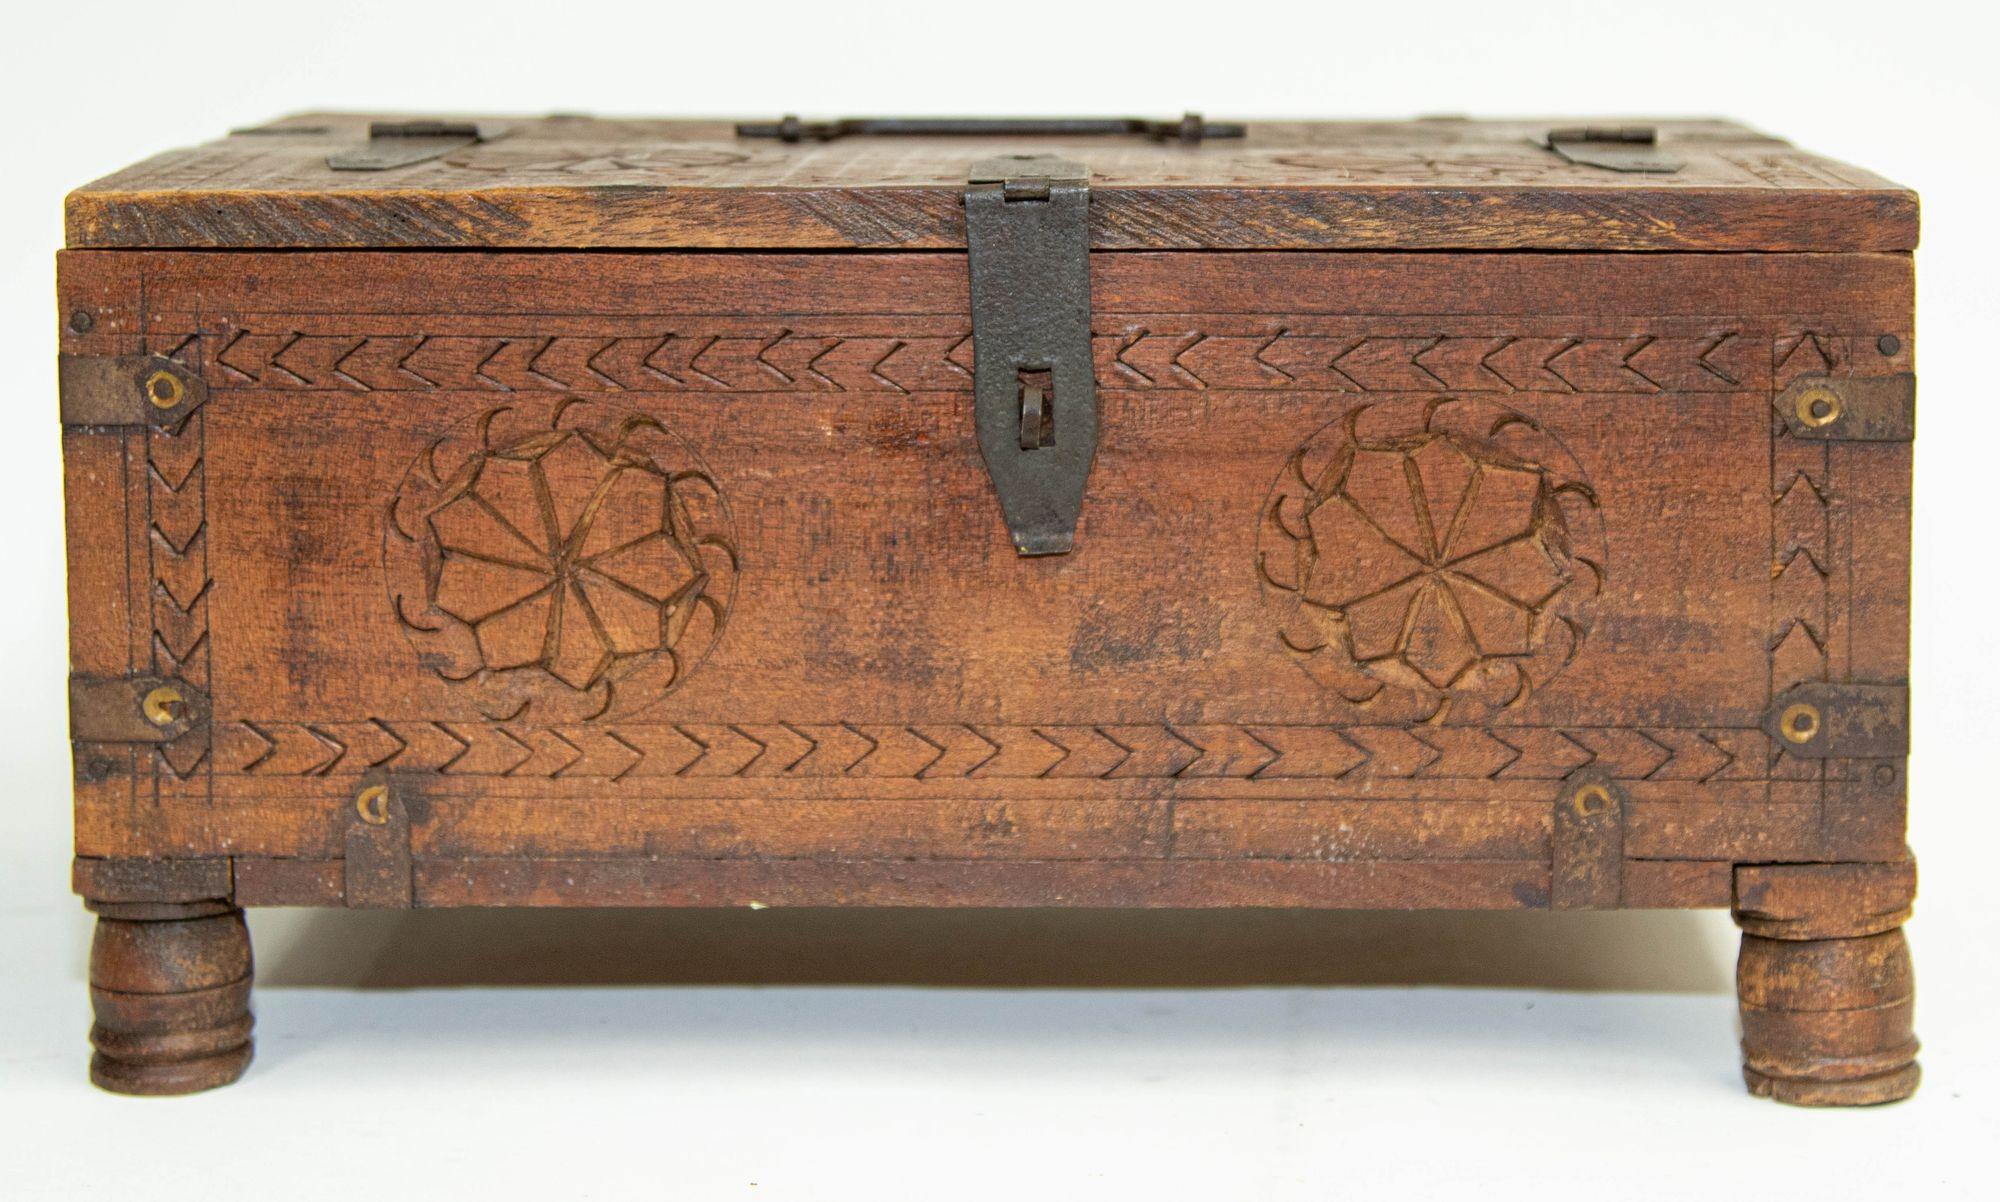 Antique Rajasthani Shekhawati Merchant's Footed Chest Box India 1900's.
Boîte de rangement en bois sculpté indien du début du 20e siècle utilisée par les marchands dans leurs magasins et aussi dans chaque maison pour stocker de l'argent et des